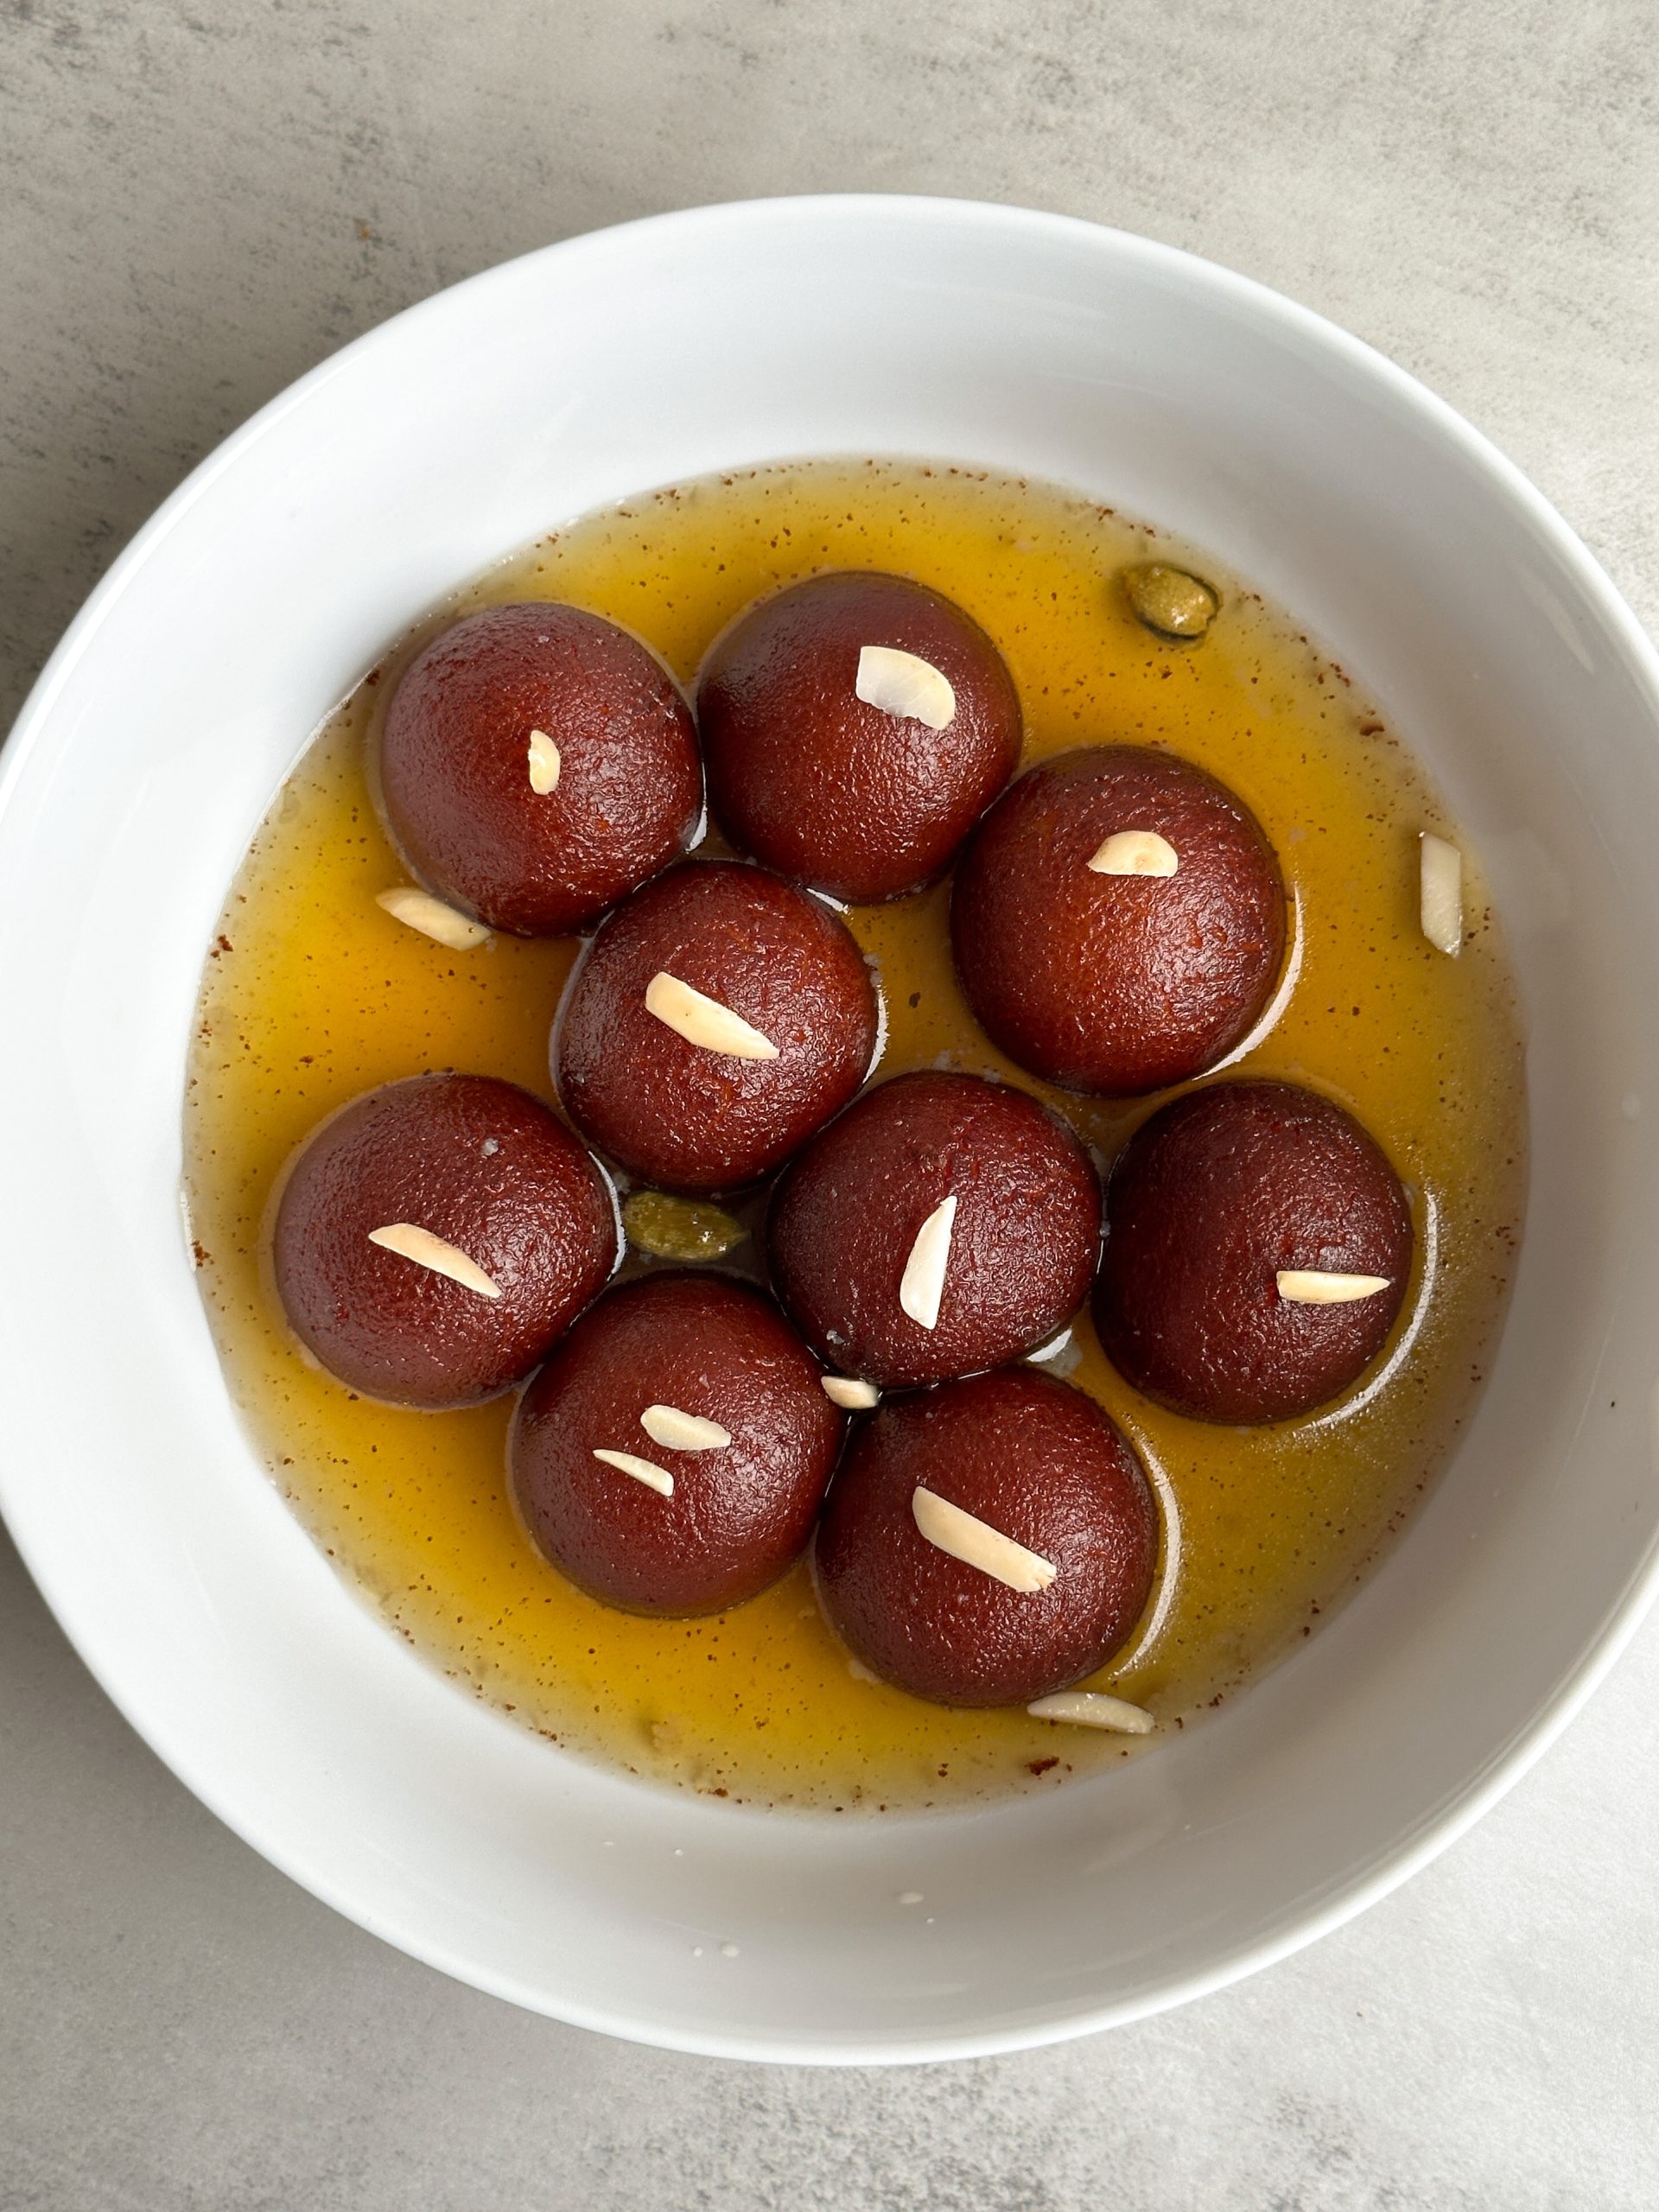 Moist brown gulab jamuns in a bowl